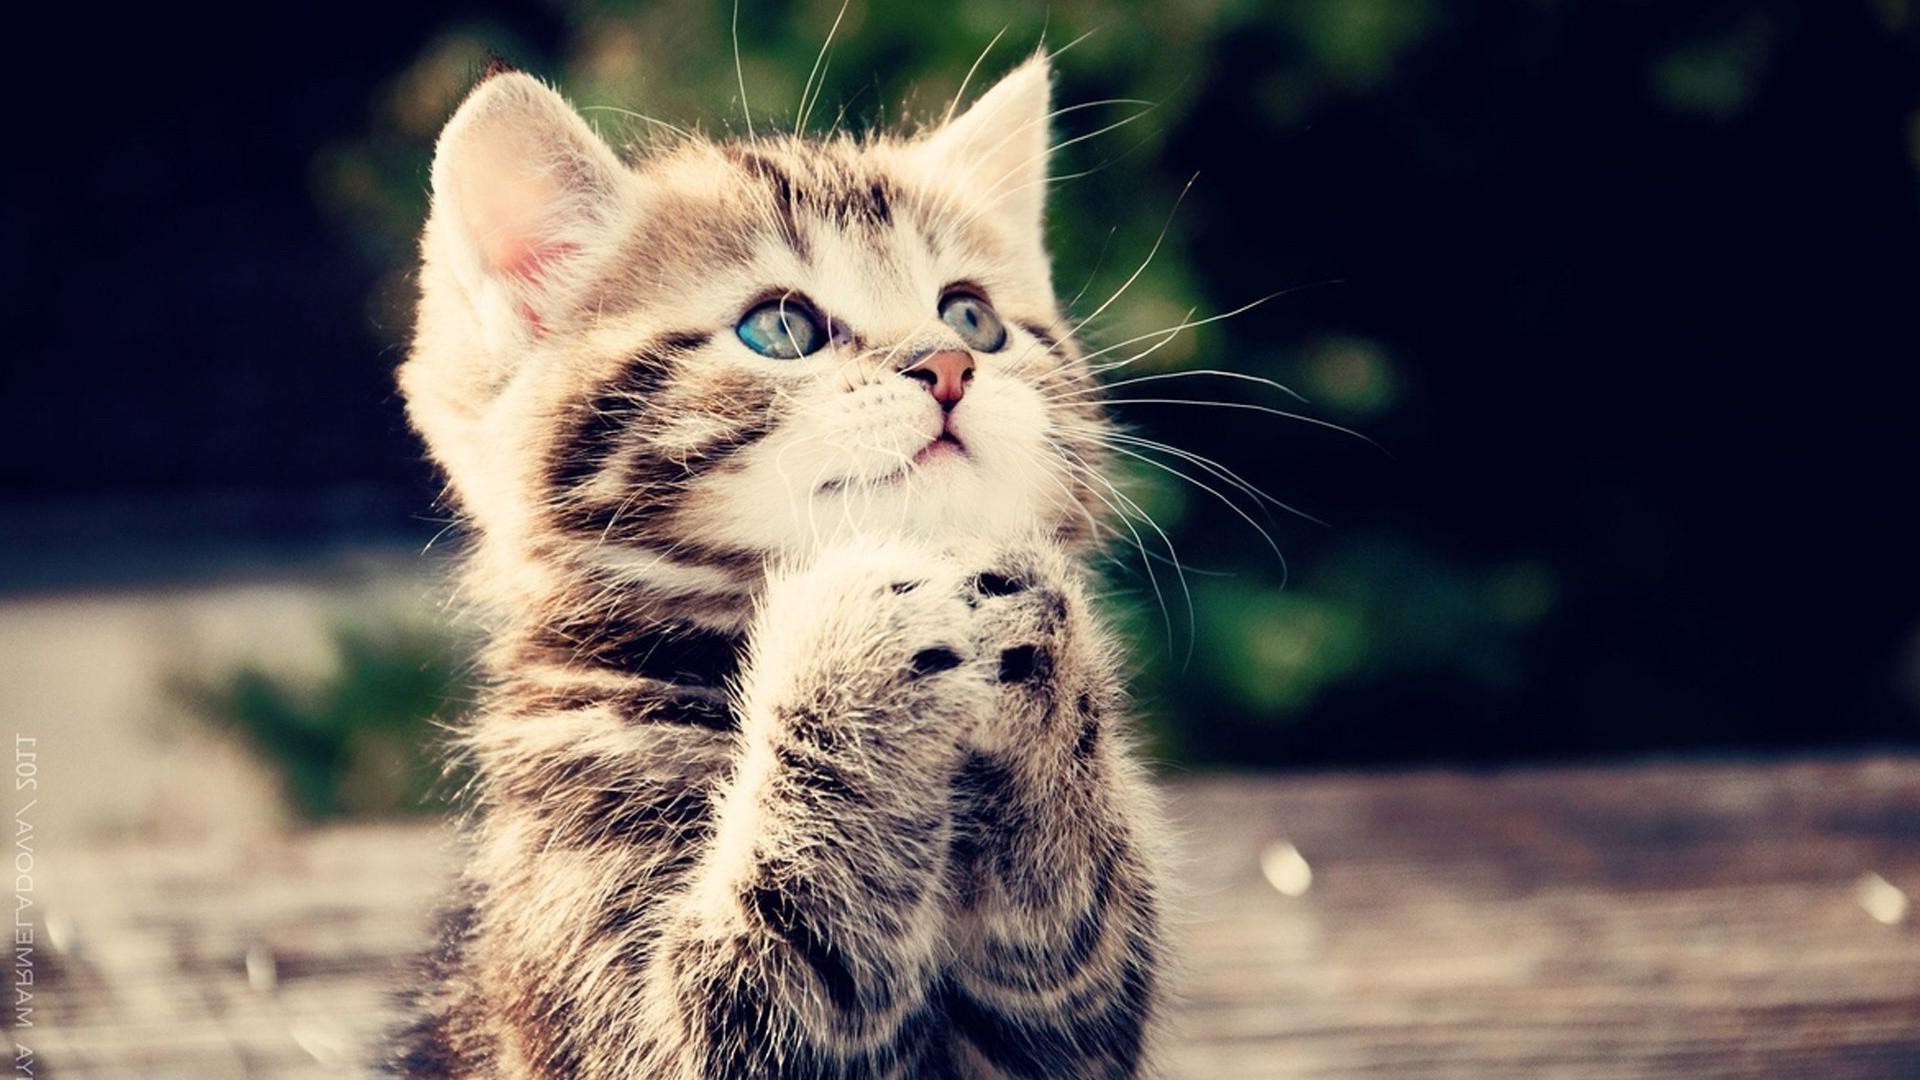 Praying cat wallpaper